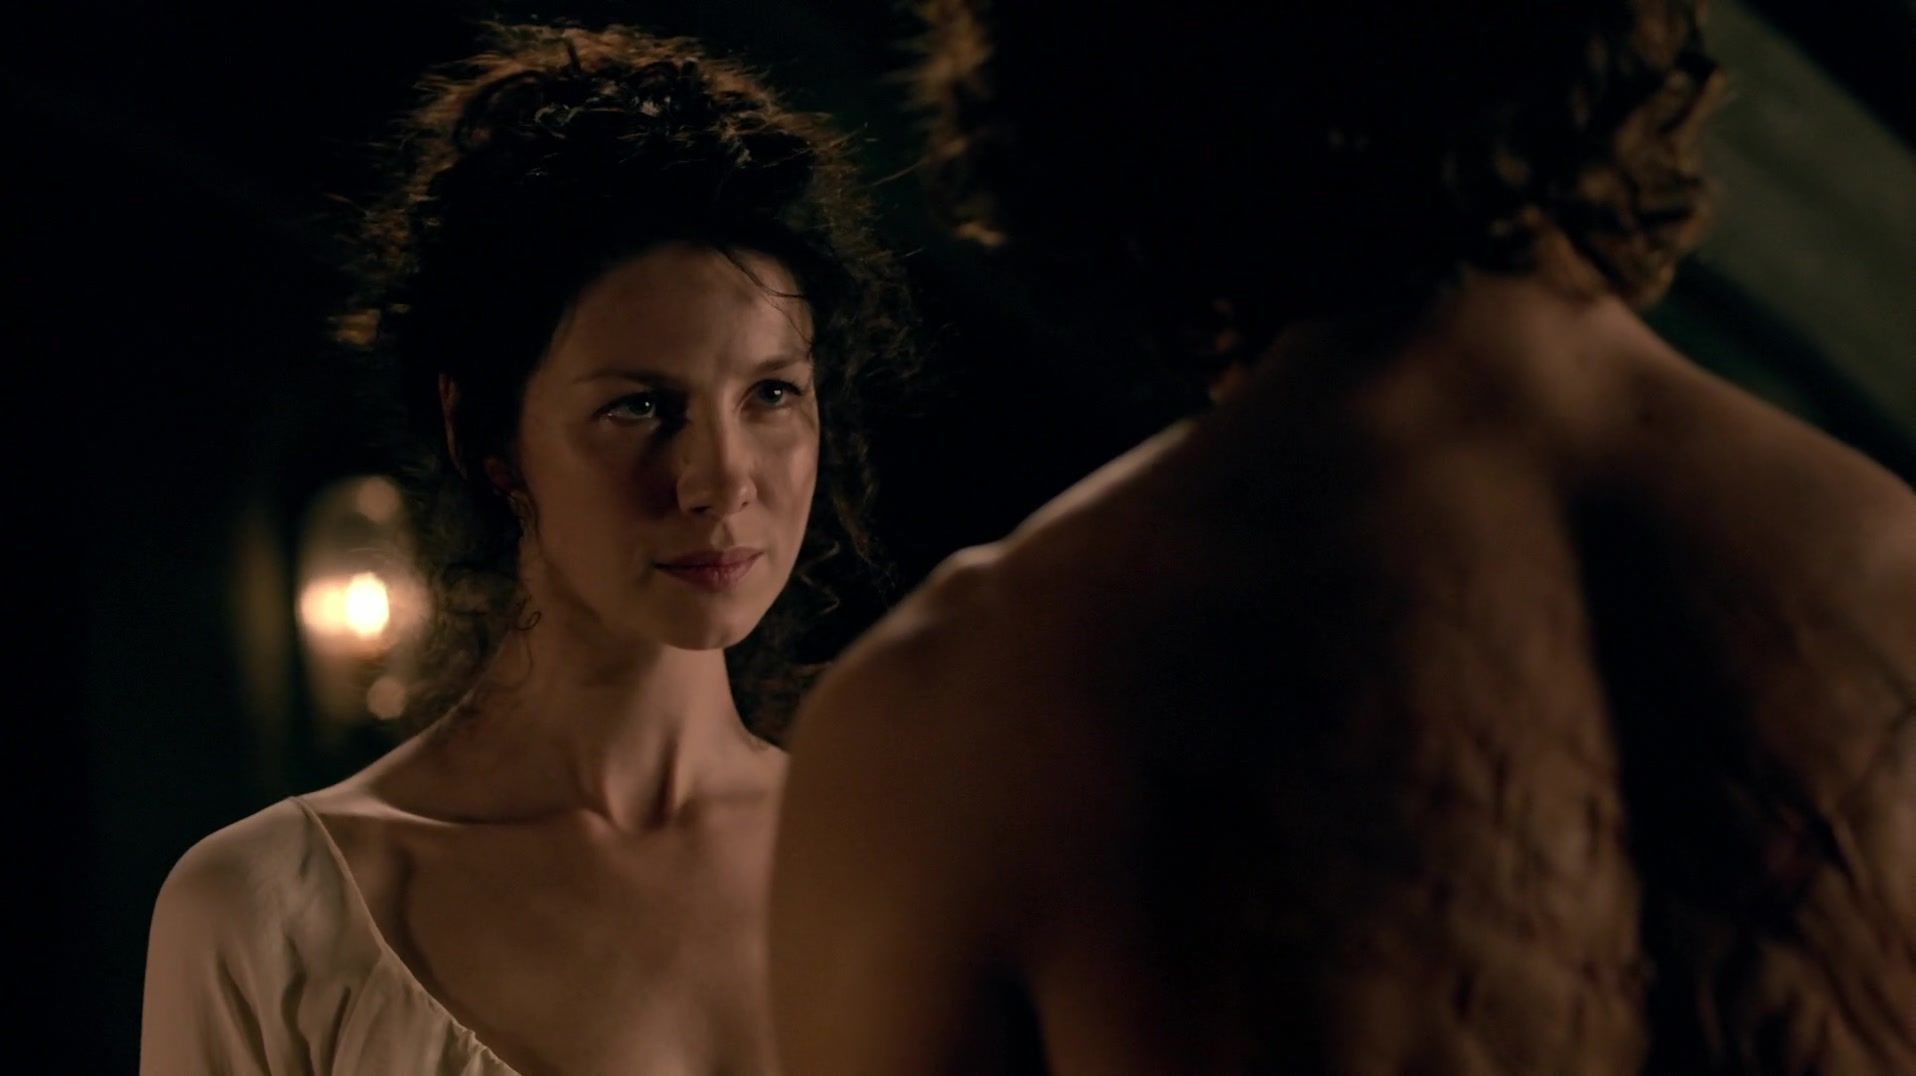 Rough Fucking Sex scene of naked Caitriona Balfe | TV show "Outlander" KissAnime - 1